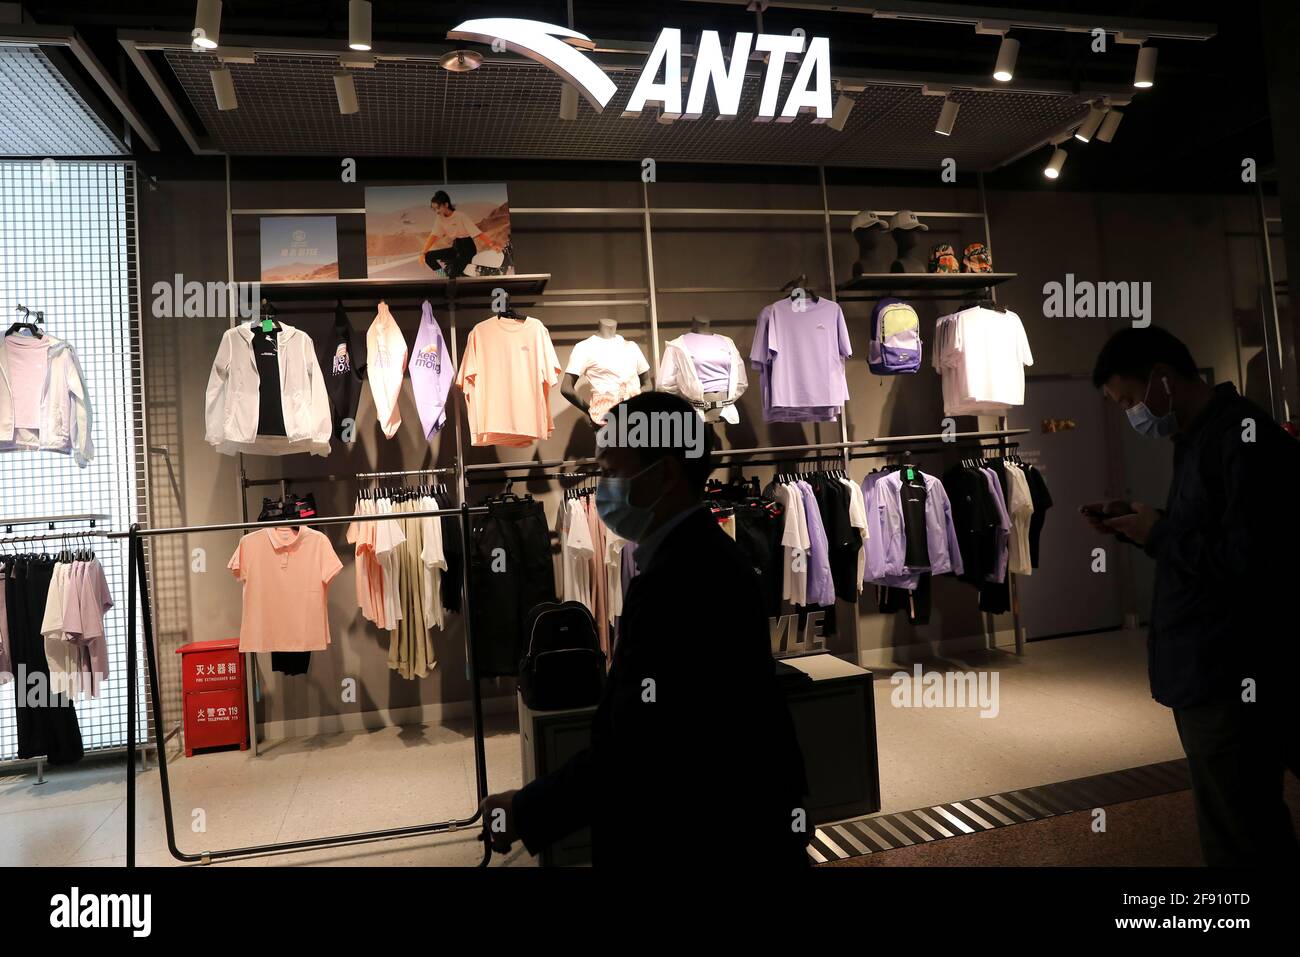 La gente pasa por una tienda de la marca china de ropa deportiva Anta en Beijing, China 15 de abril de 2021. Foto tomada 15 de abril de 2021. REUTERS/Tingshu Wang